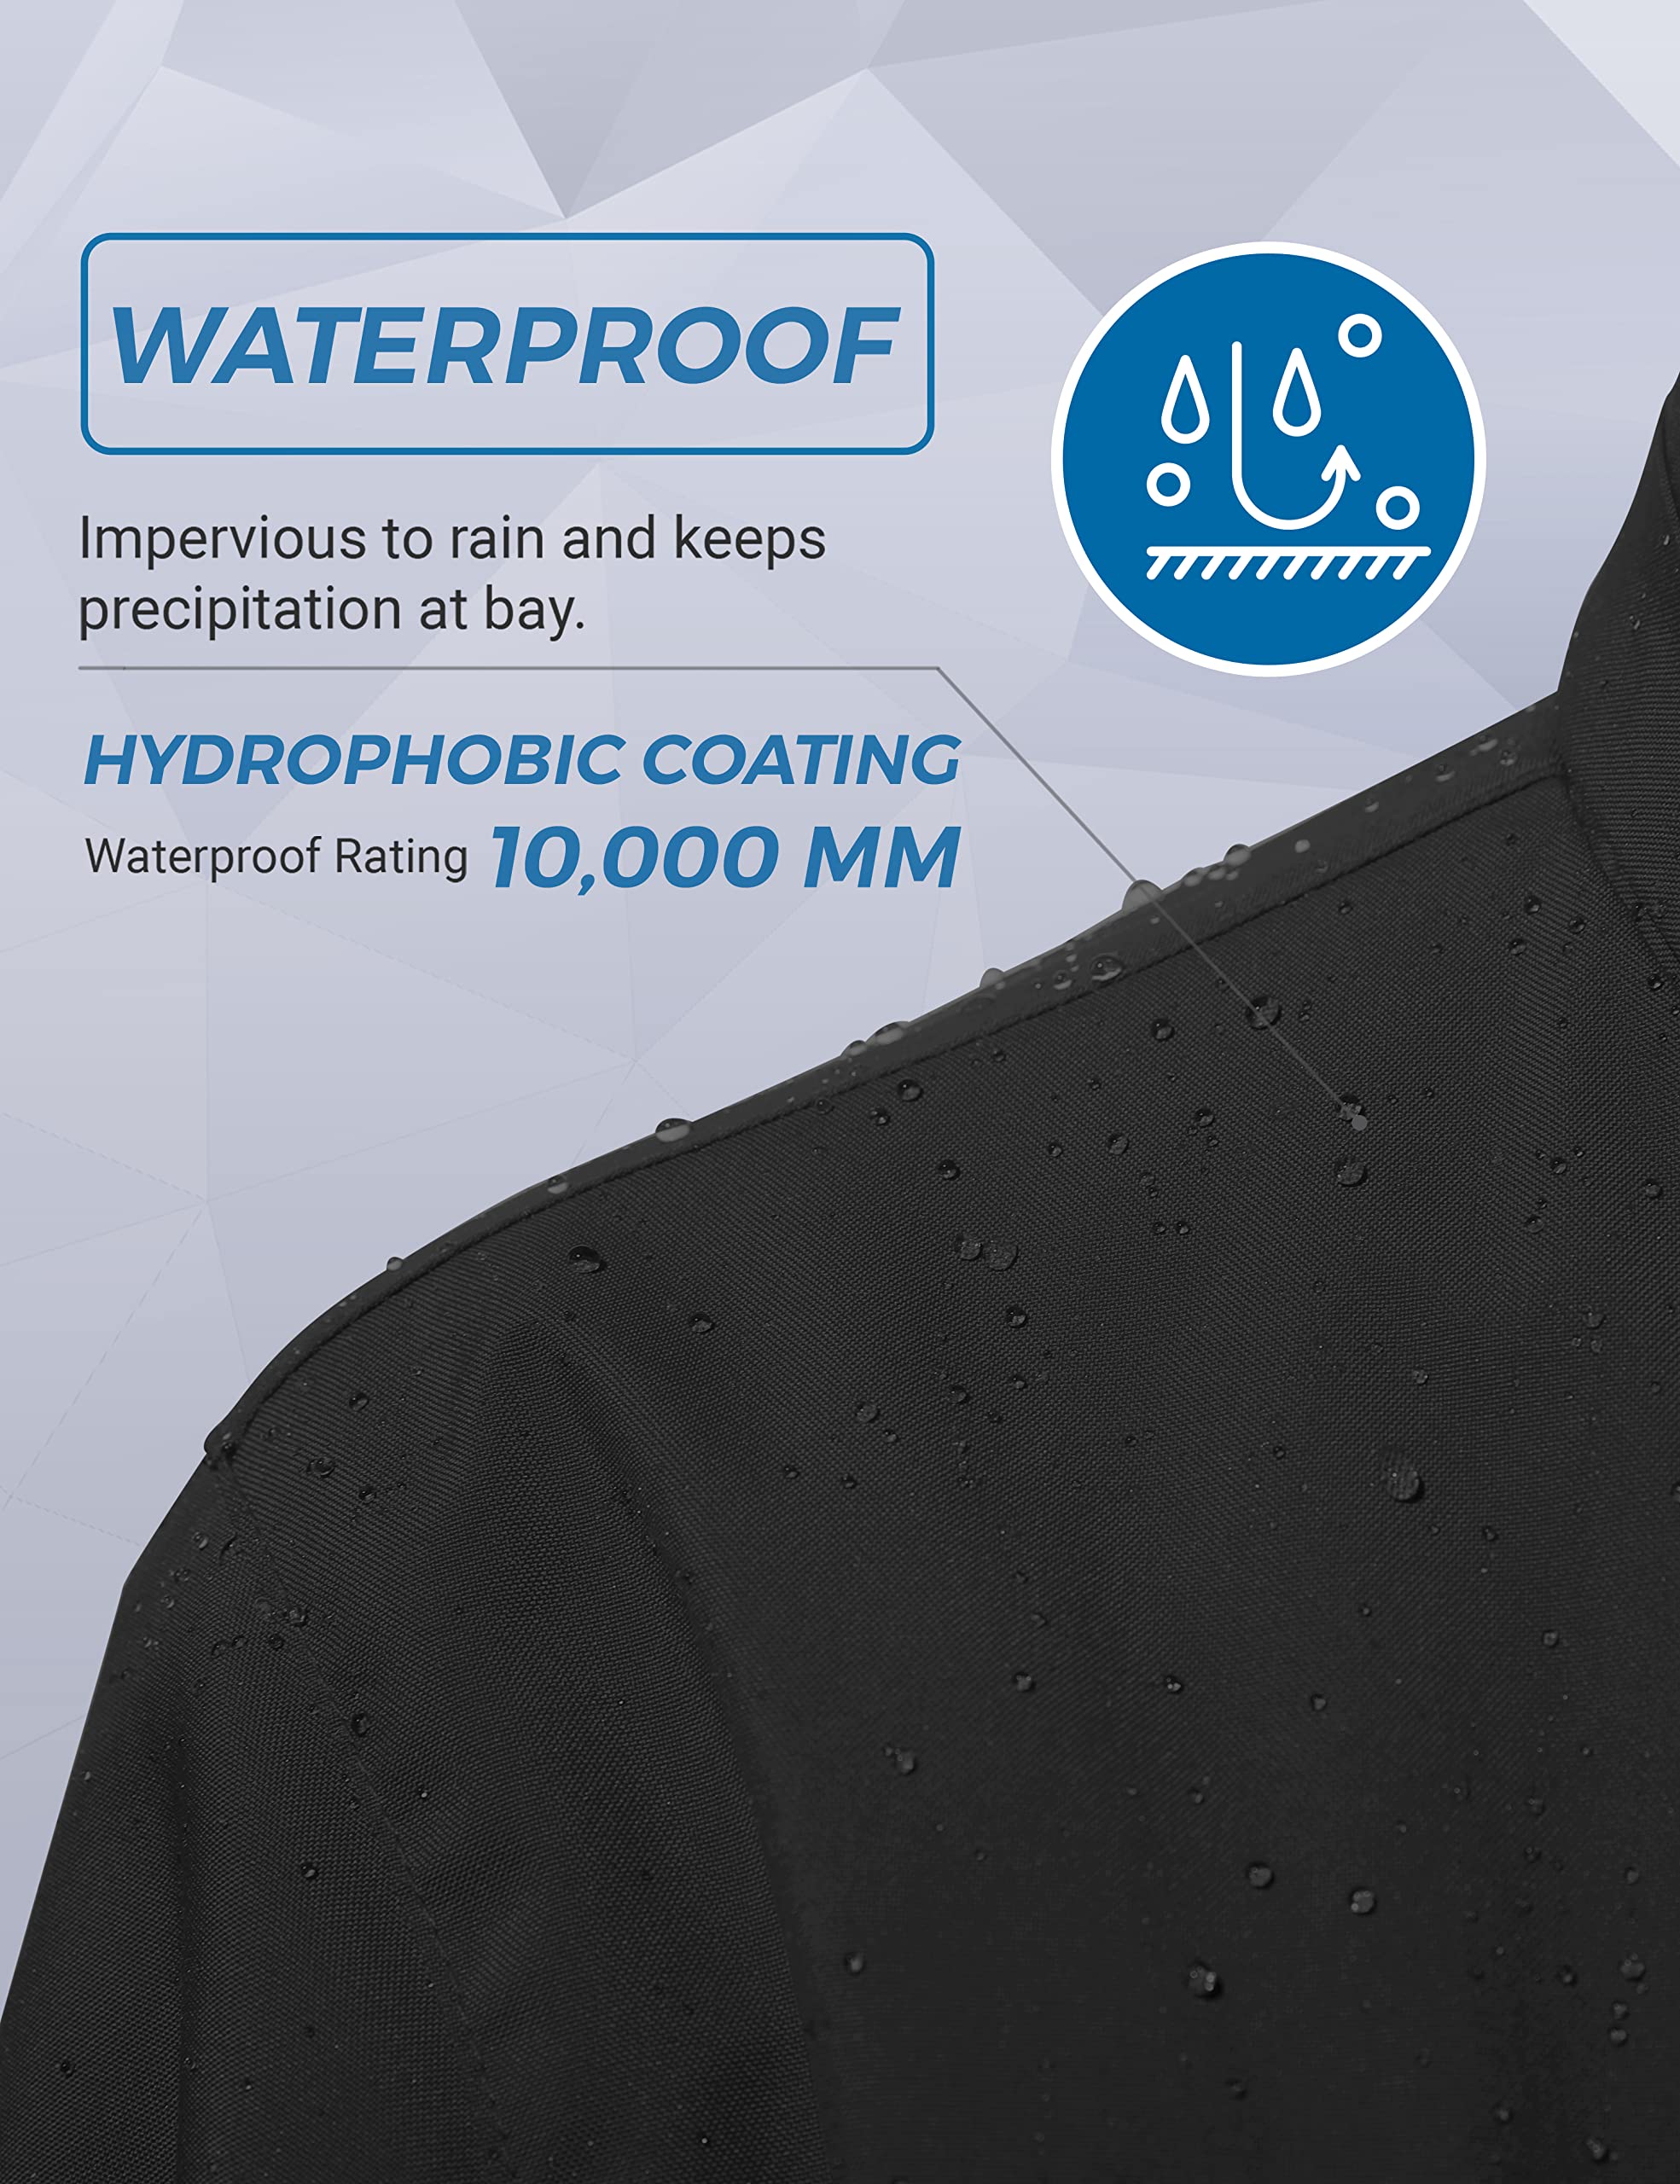 Wantdo Women's Mountain Waterproof Ski Jacket Windproof Rain Jacket Winter Warm Hooded Coat